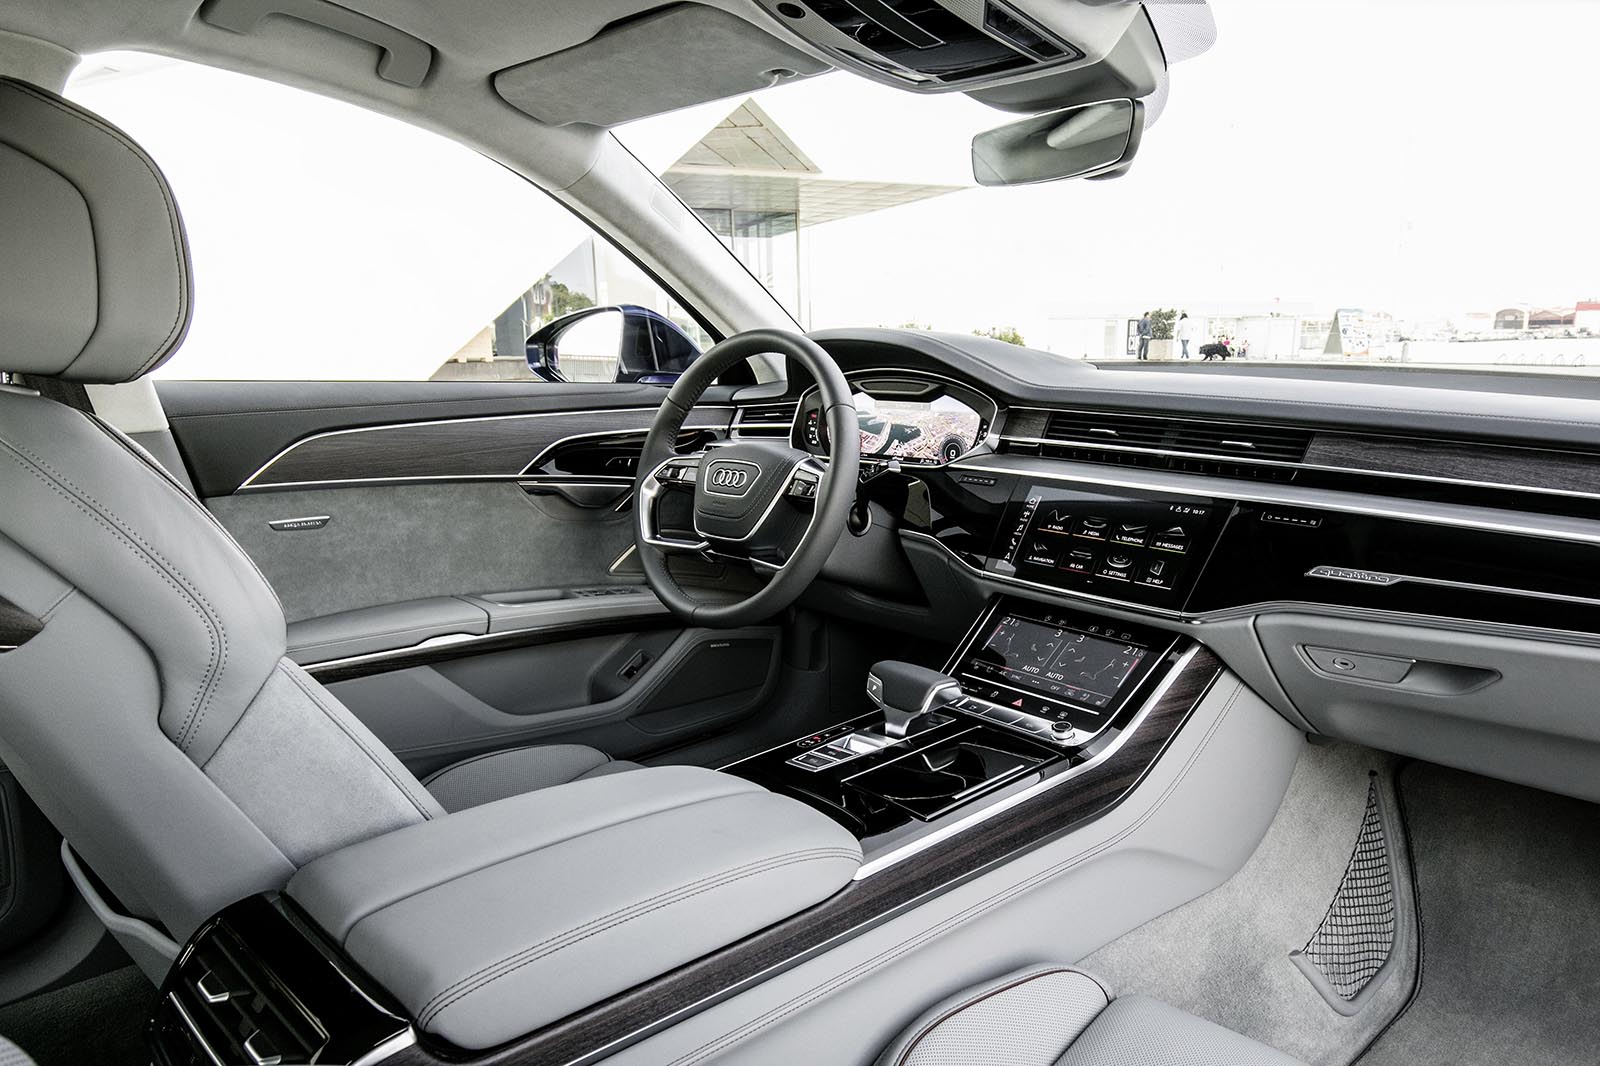 Audi A8 科技旗艦運用全新的Audi Virtual Cockpit全數位虛擬座艙科技，捨棄傳統按鍵與旋鈕設計，首度搭配採用新世代MMI直覺式觸碰控制系統，駕駛者只需以手指點觸按壓或口語指令即可輕鬆操作多媒體影音資訊系統、空調與座椅調整等多項功能，人性化的操作邏輯與駕駛導向的設計令人愛不釋手